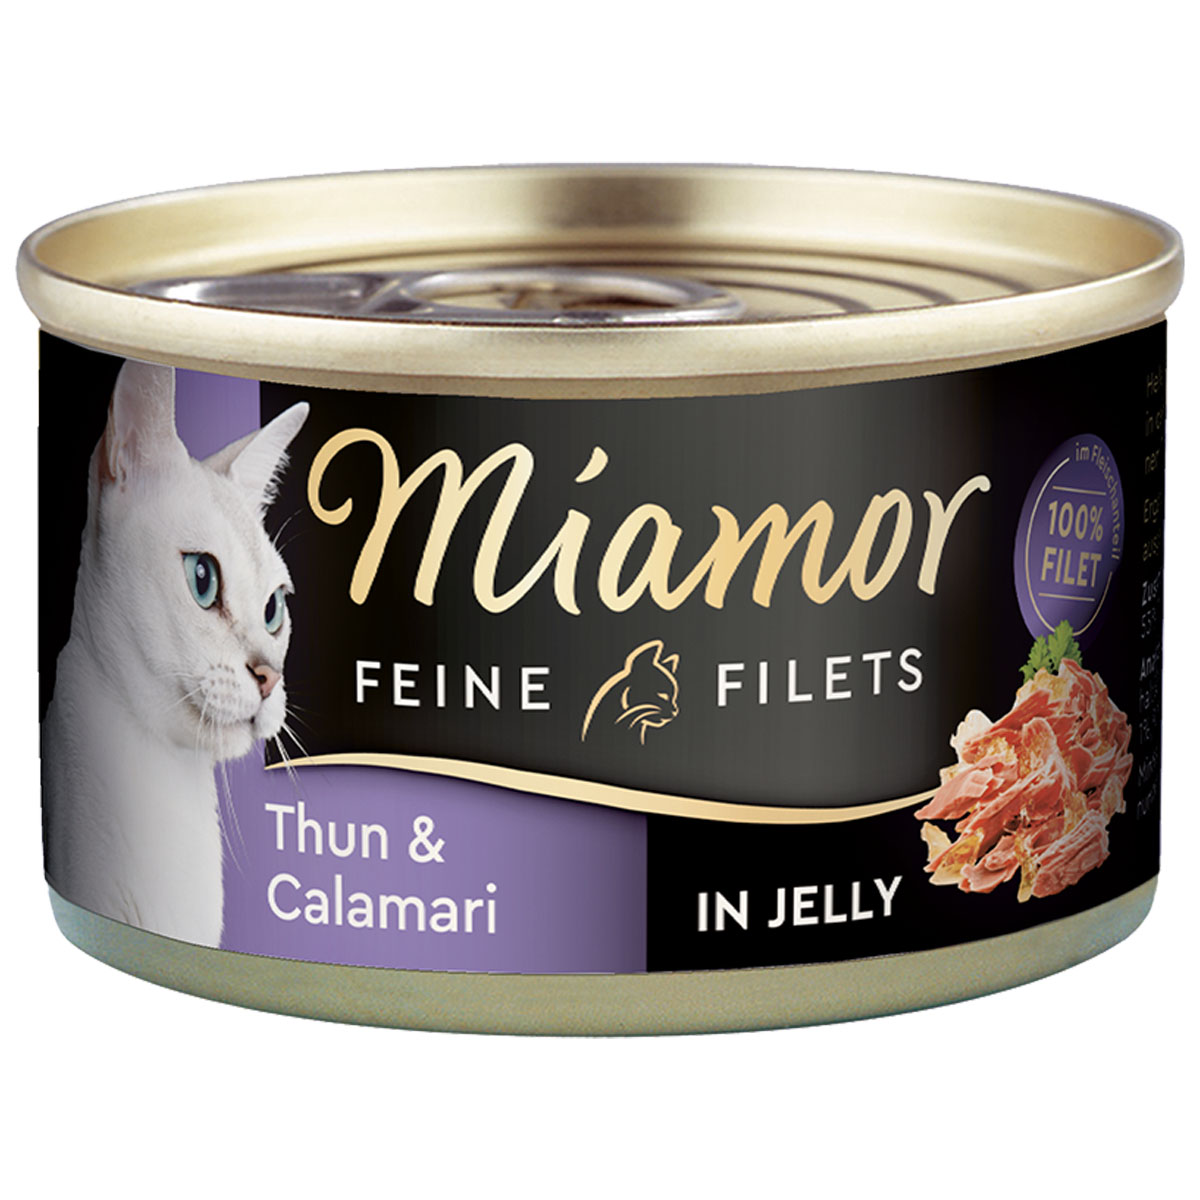 Miamor Katzenfutter Feine Filets in Jelly Thunfisch und Calamari 48x100g